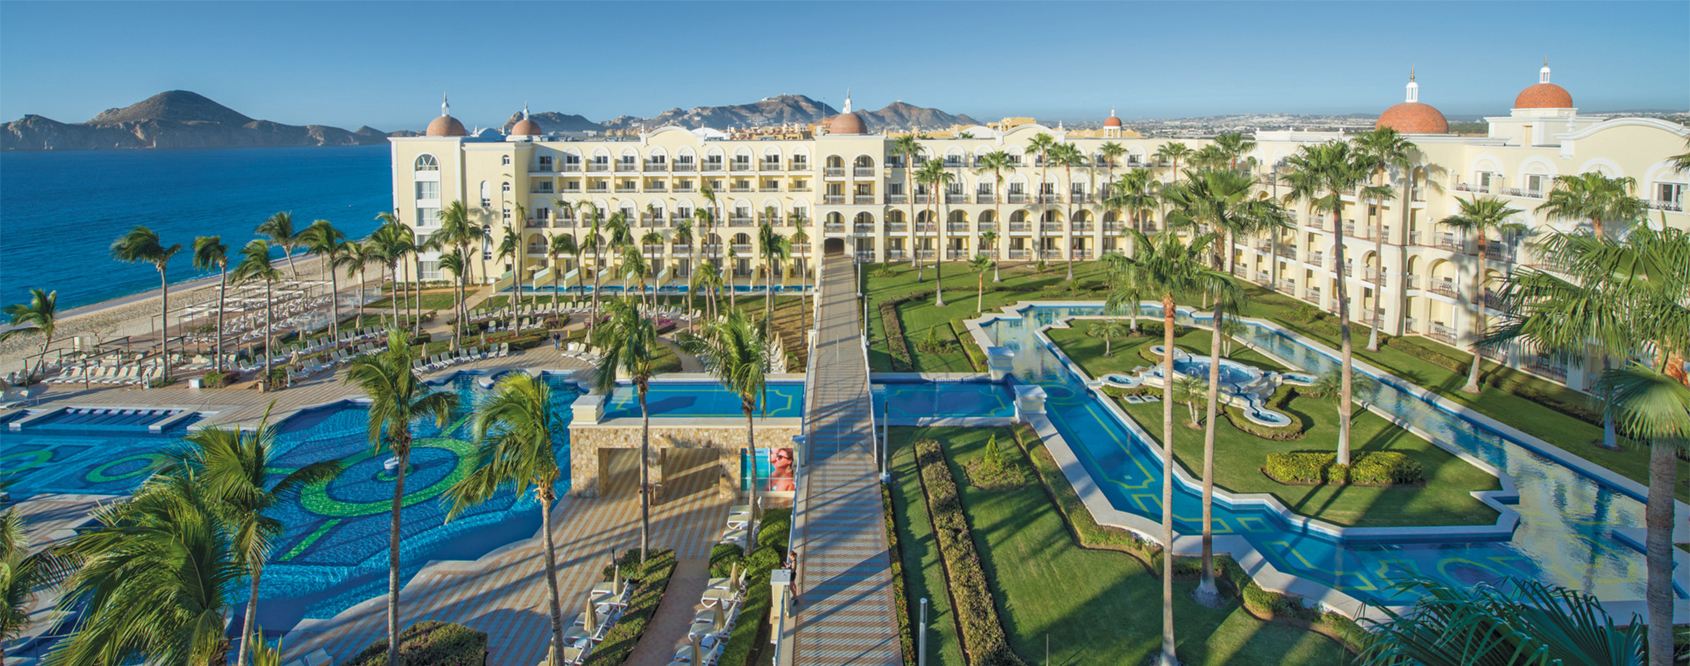 RIU Hotels & Resorts Main Image